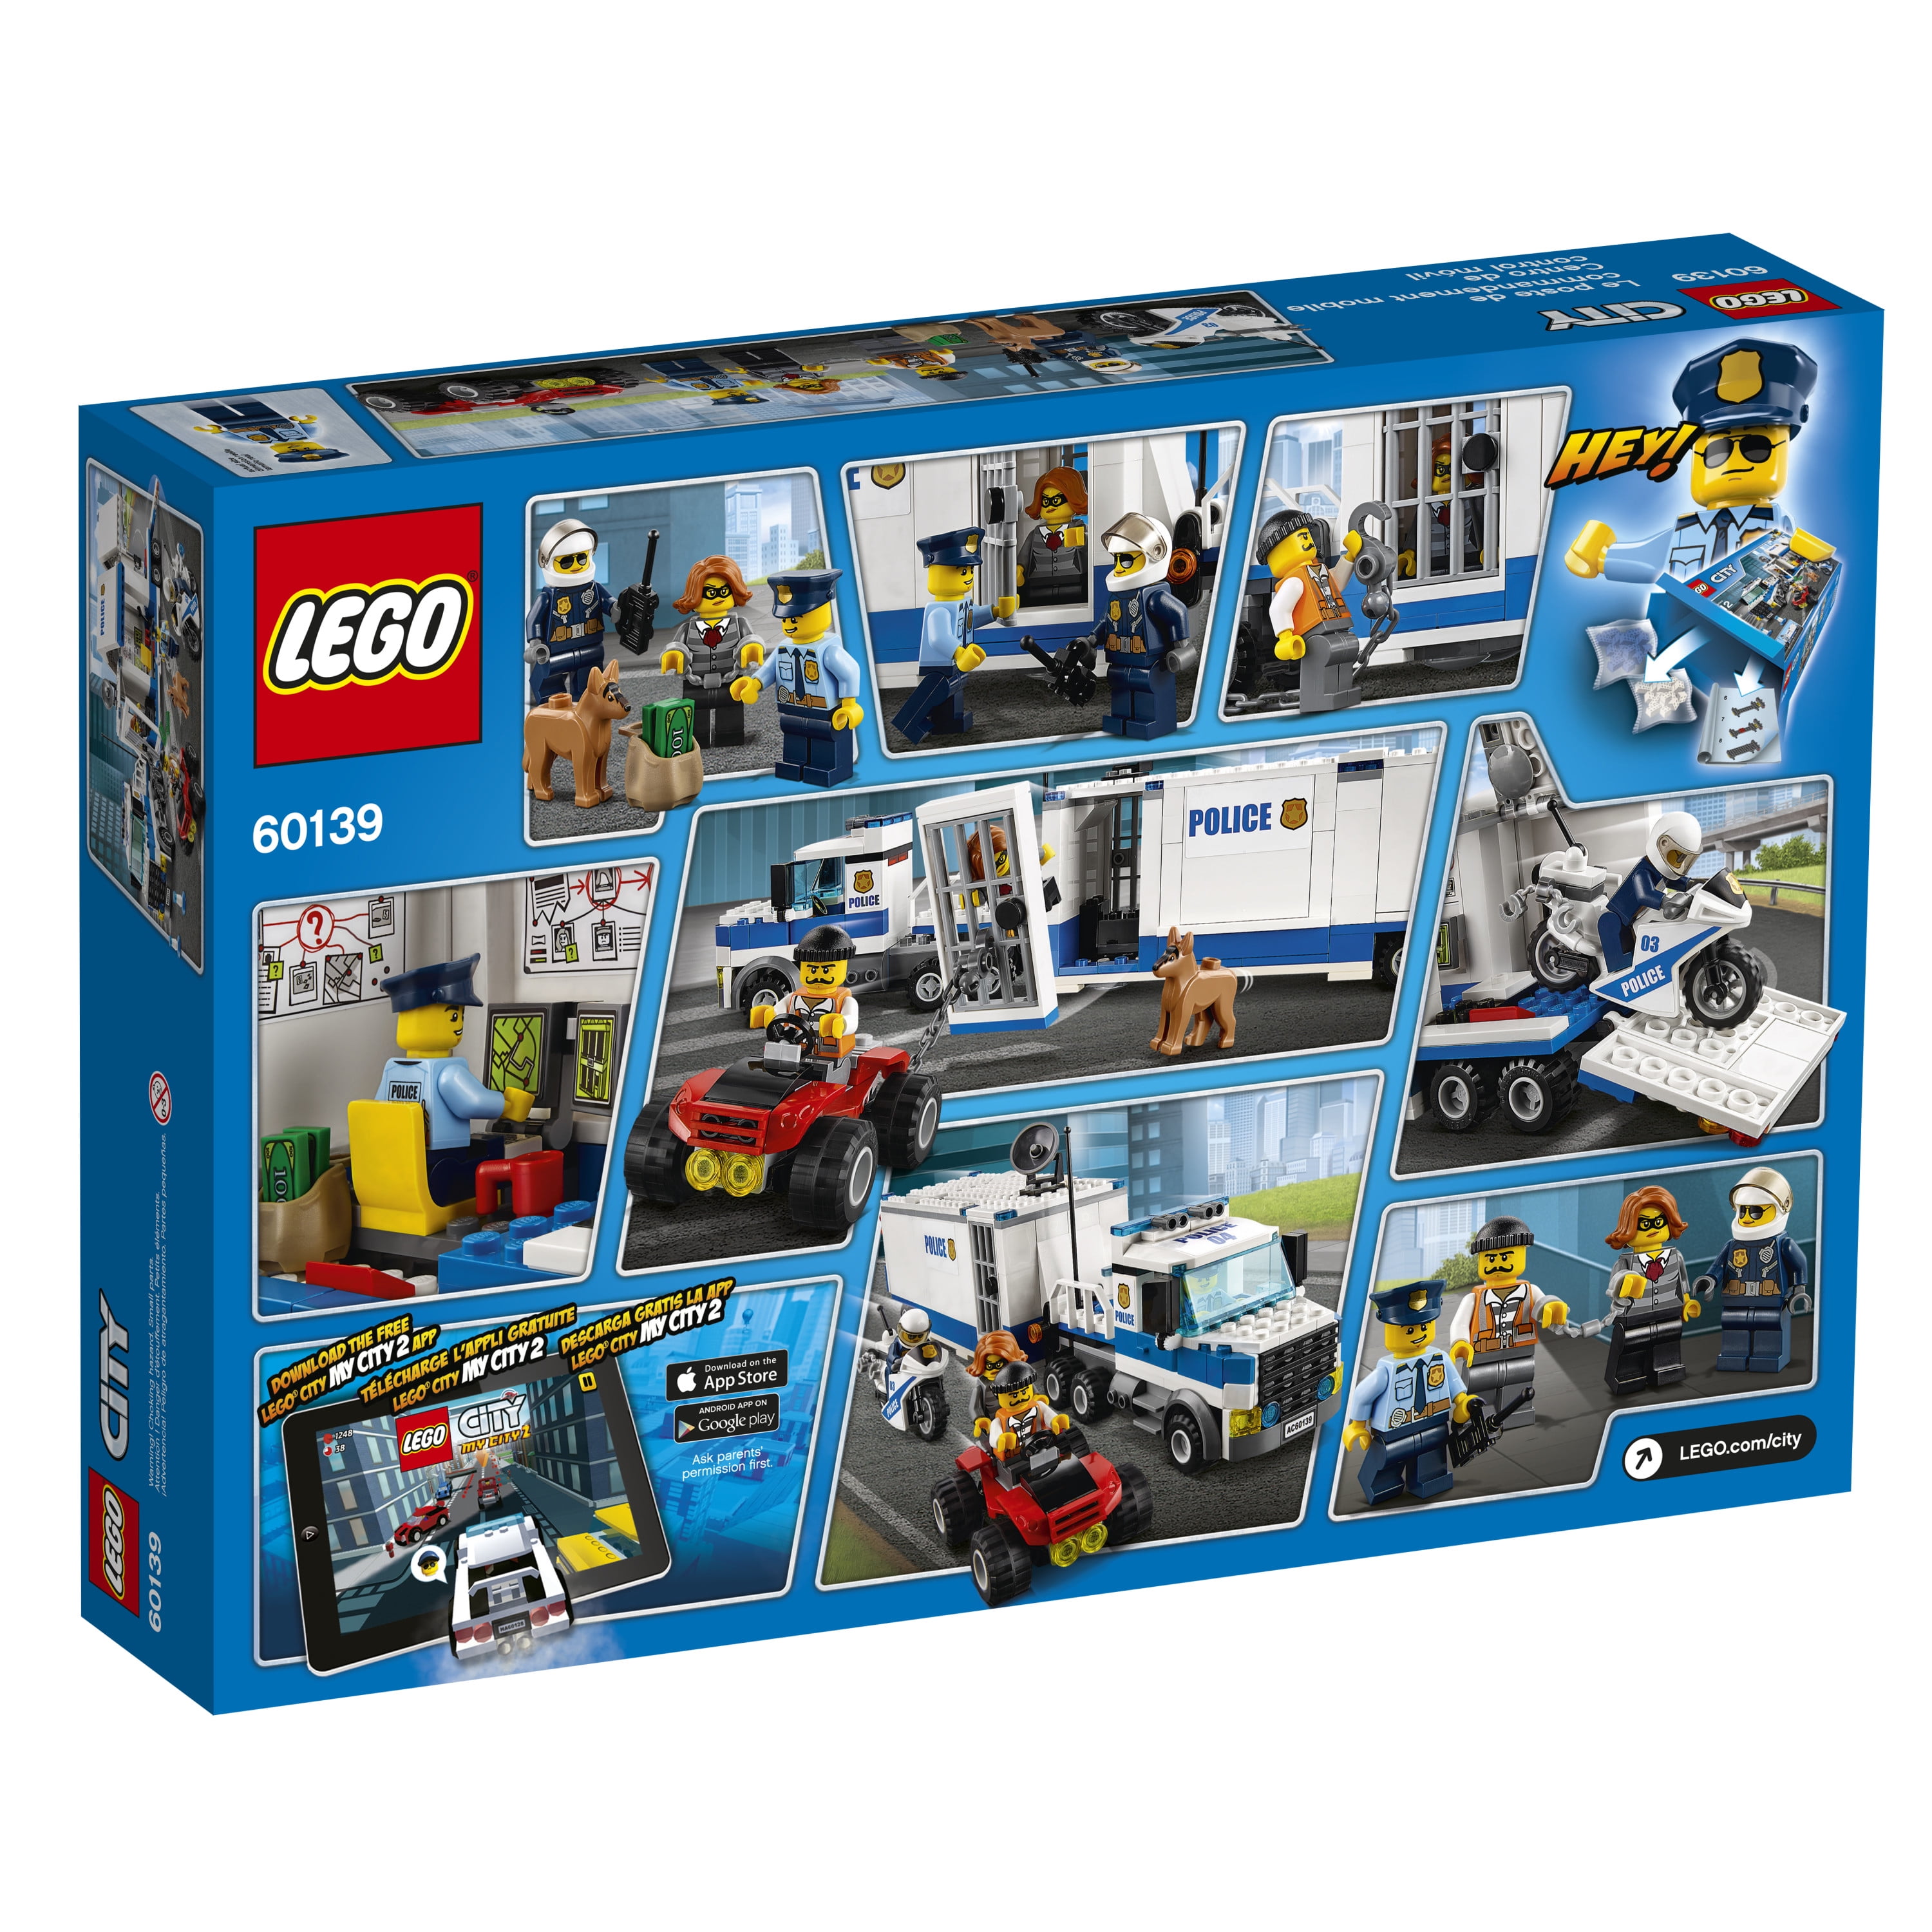 LEGO Police Mobile Command 60139 (374 Pieces) - Walmart.com